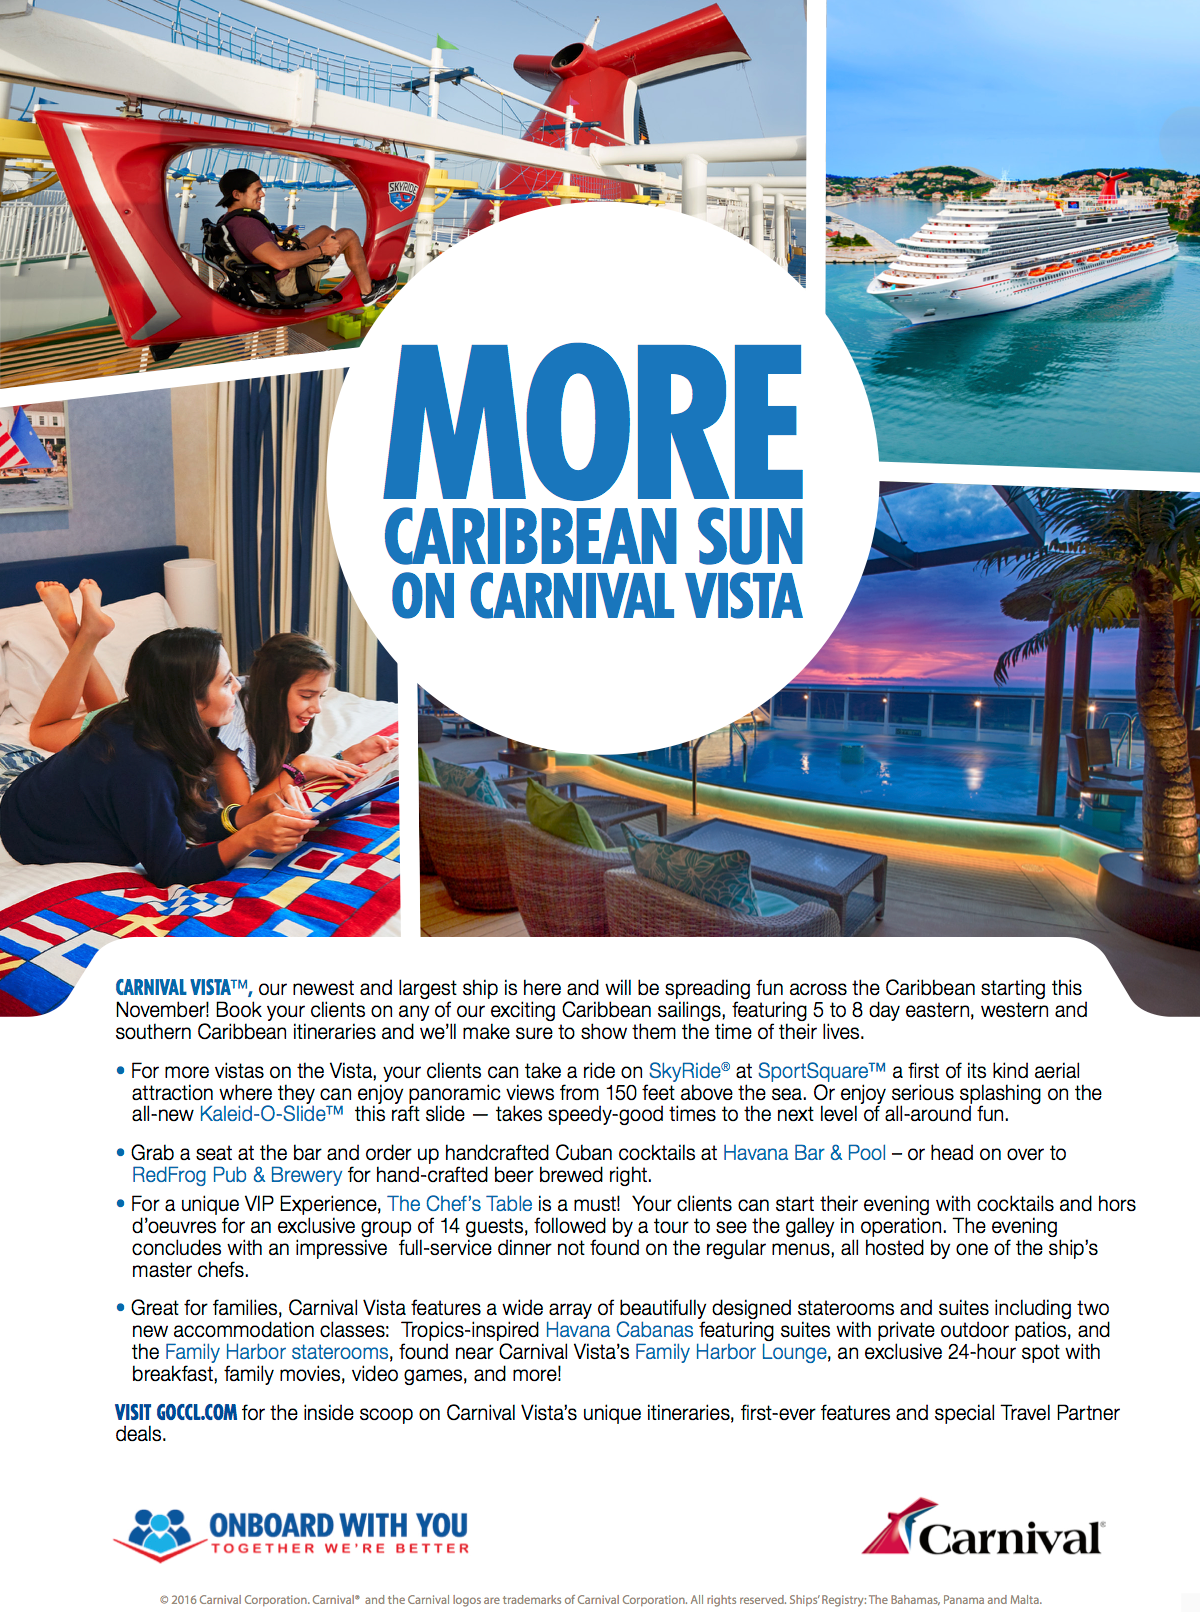 Carnival Cruise Line Carnival Cruise Lines Carnival Vista flyer Advertising 